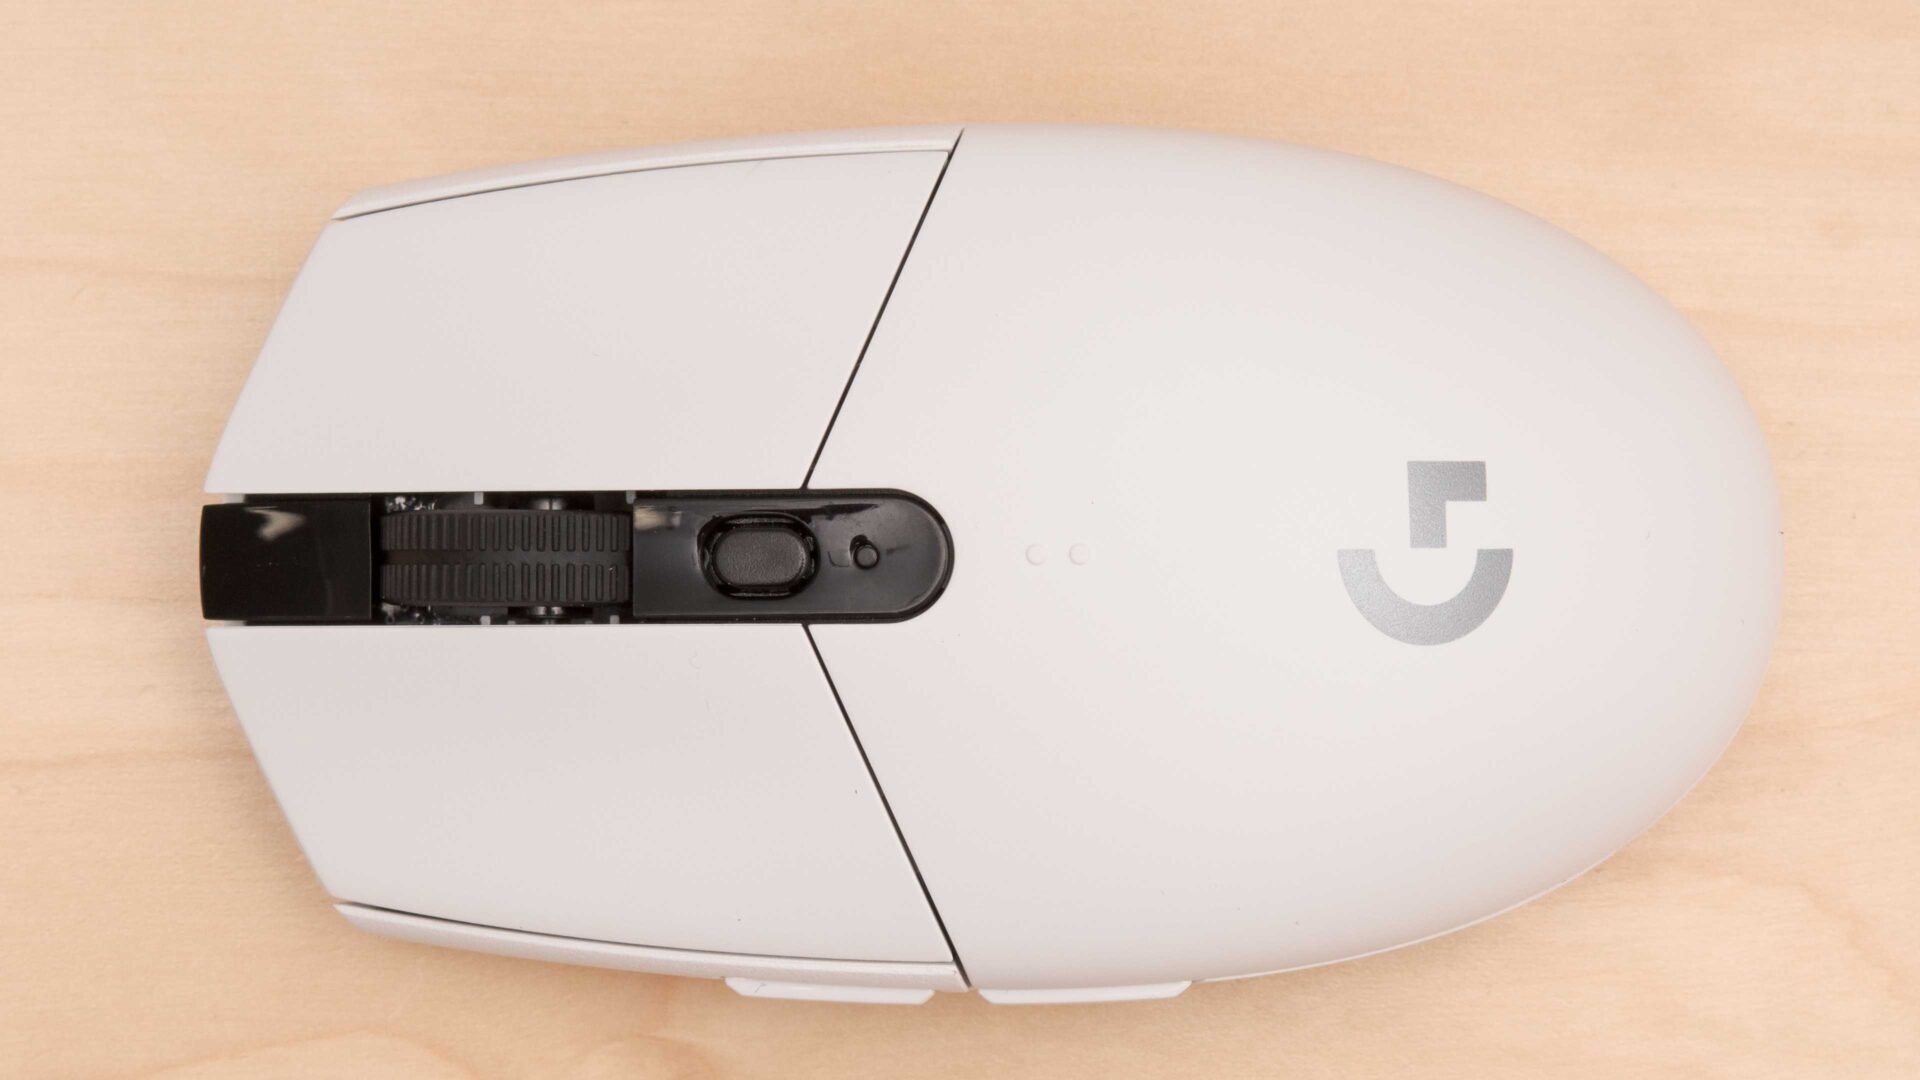 Logitech G503 LightSpeed Mouse